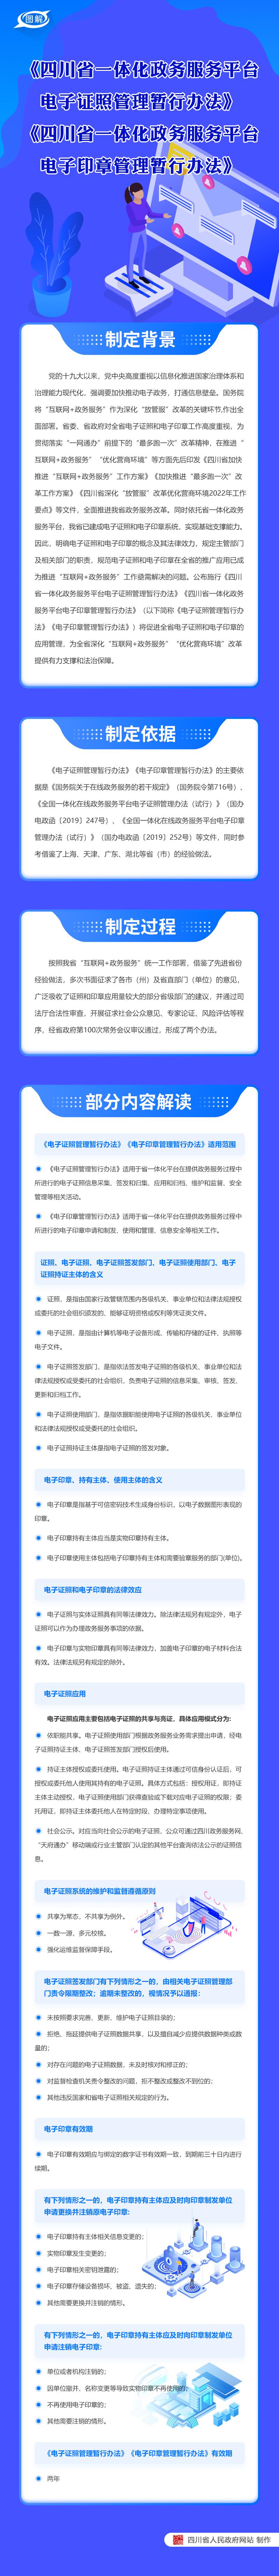 四川省一體化政務服務平台電子證照管理暫行辦法